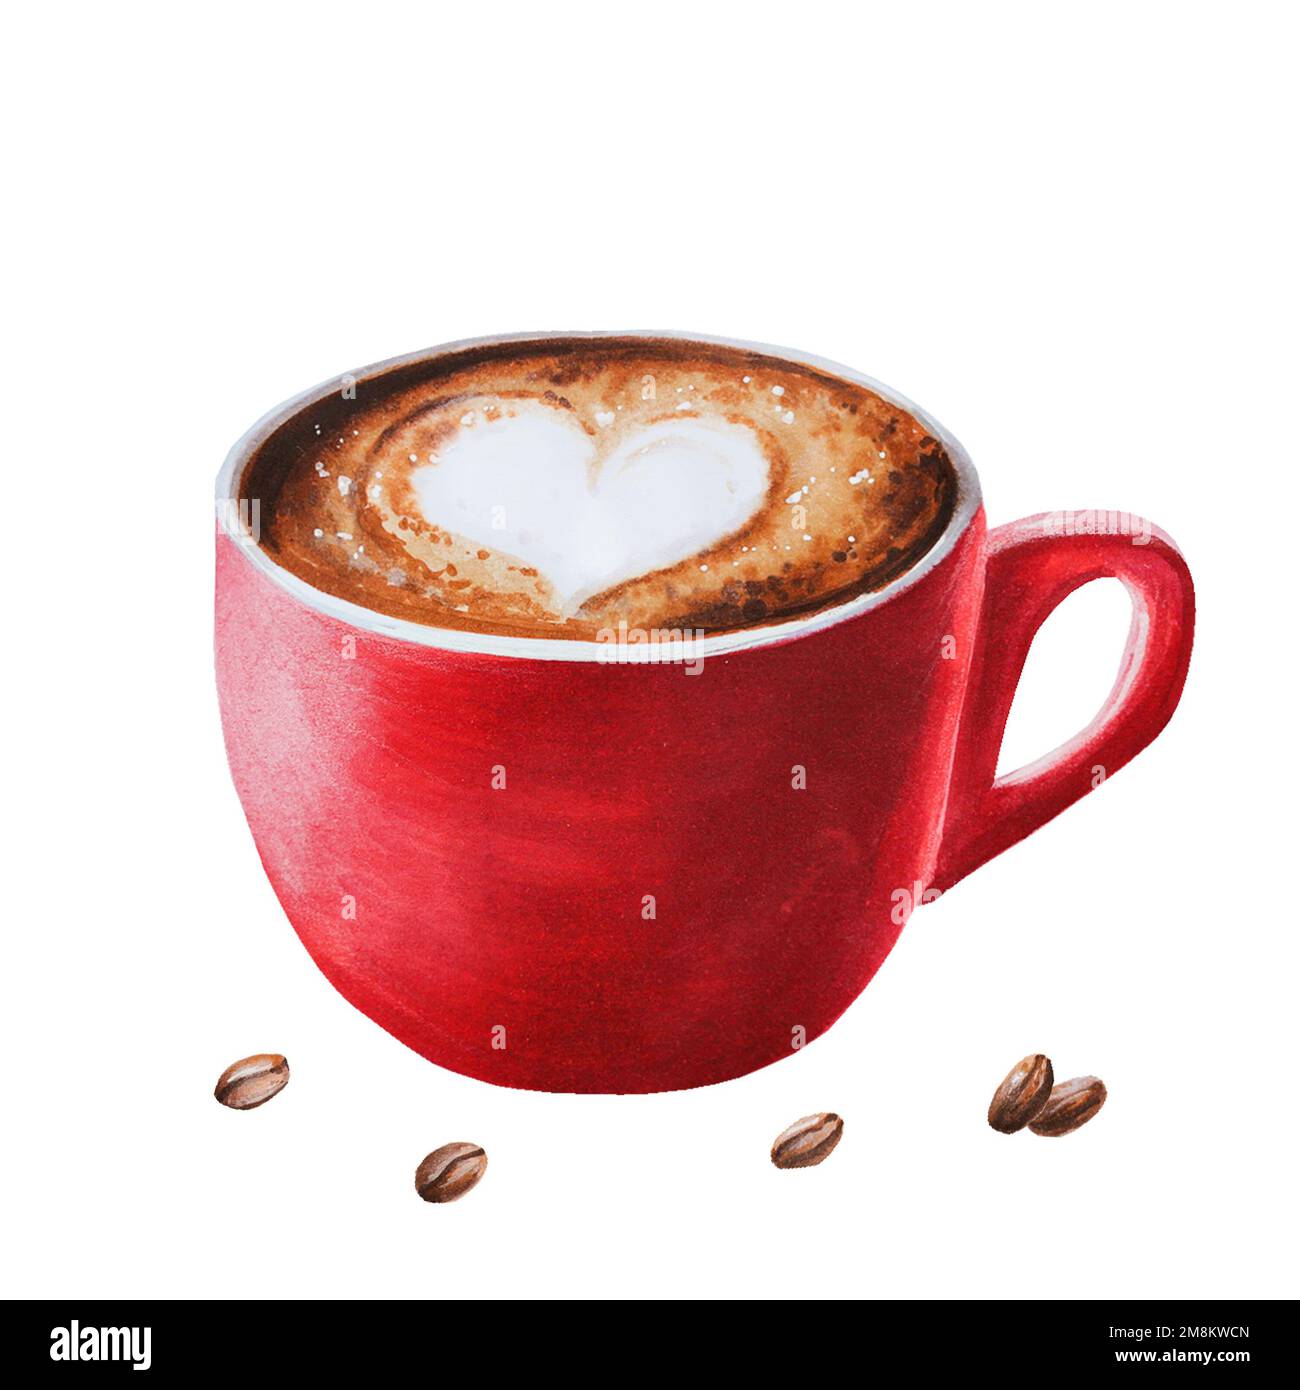 Aquarelle cappuccino sucré illustration café dans une tasse en porcelaine avec des grains de café. Peinture à la main sur un fond blanc isolé. Pour les concepteurs Banque D'Images